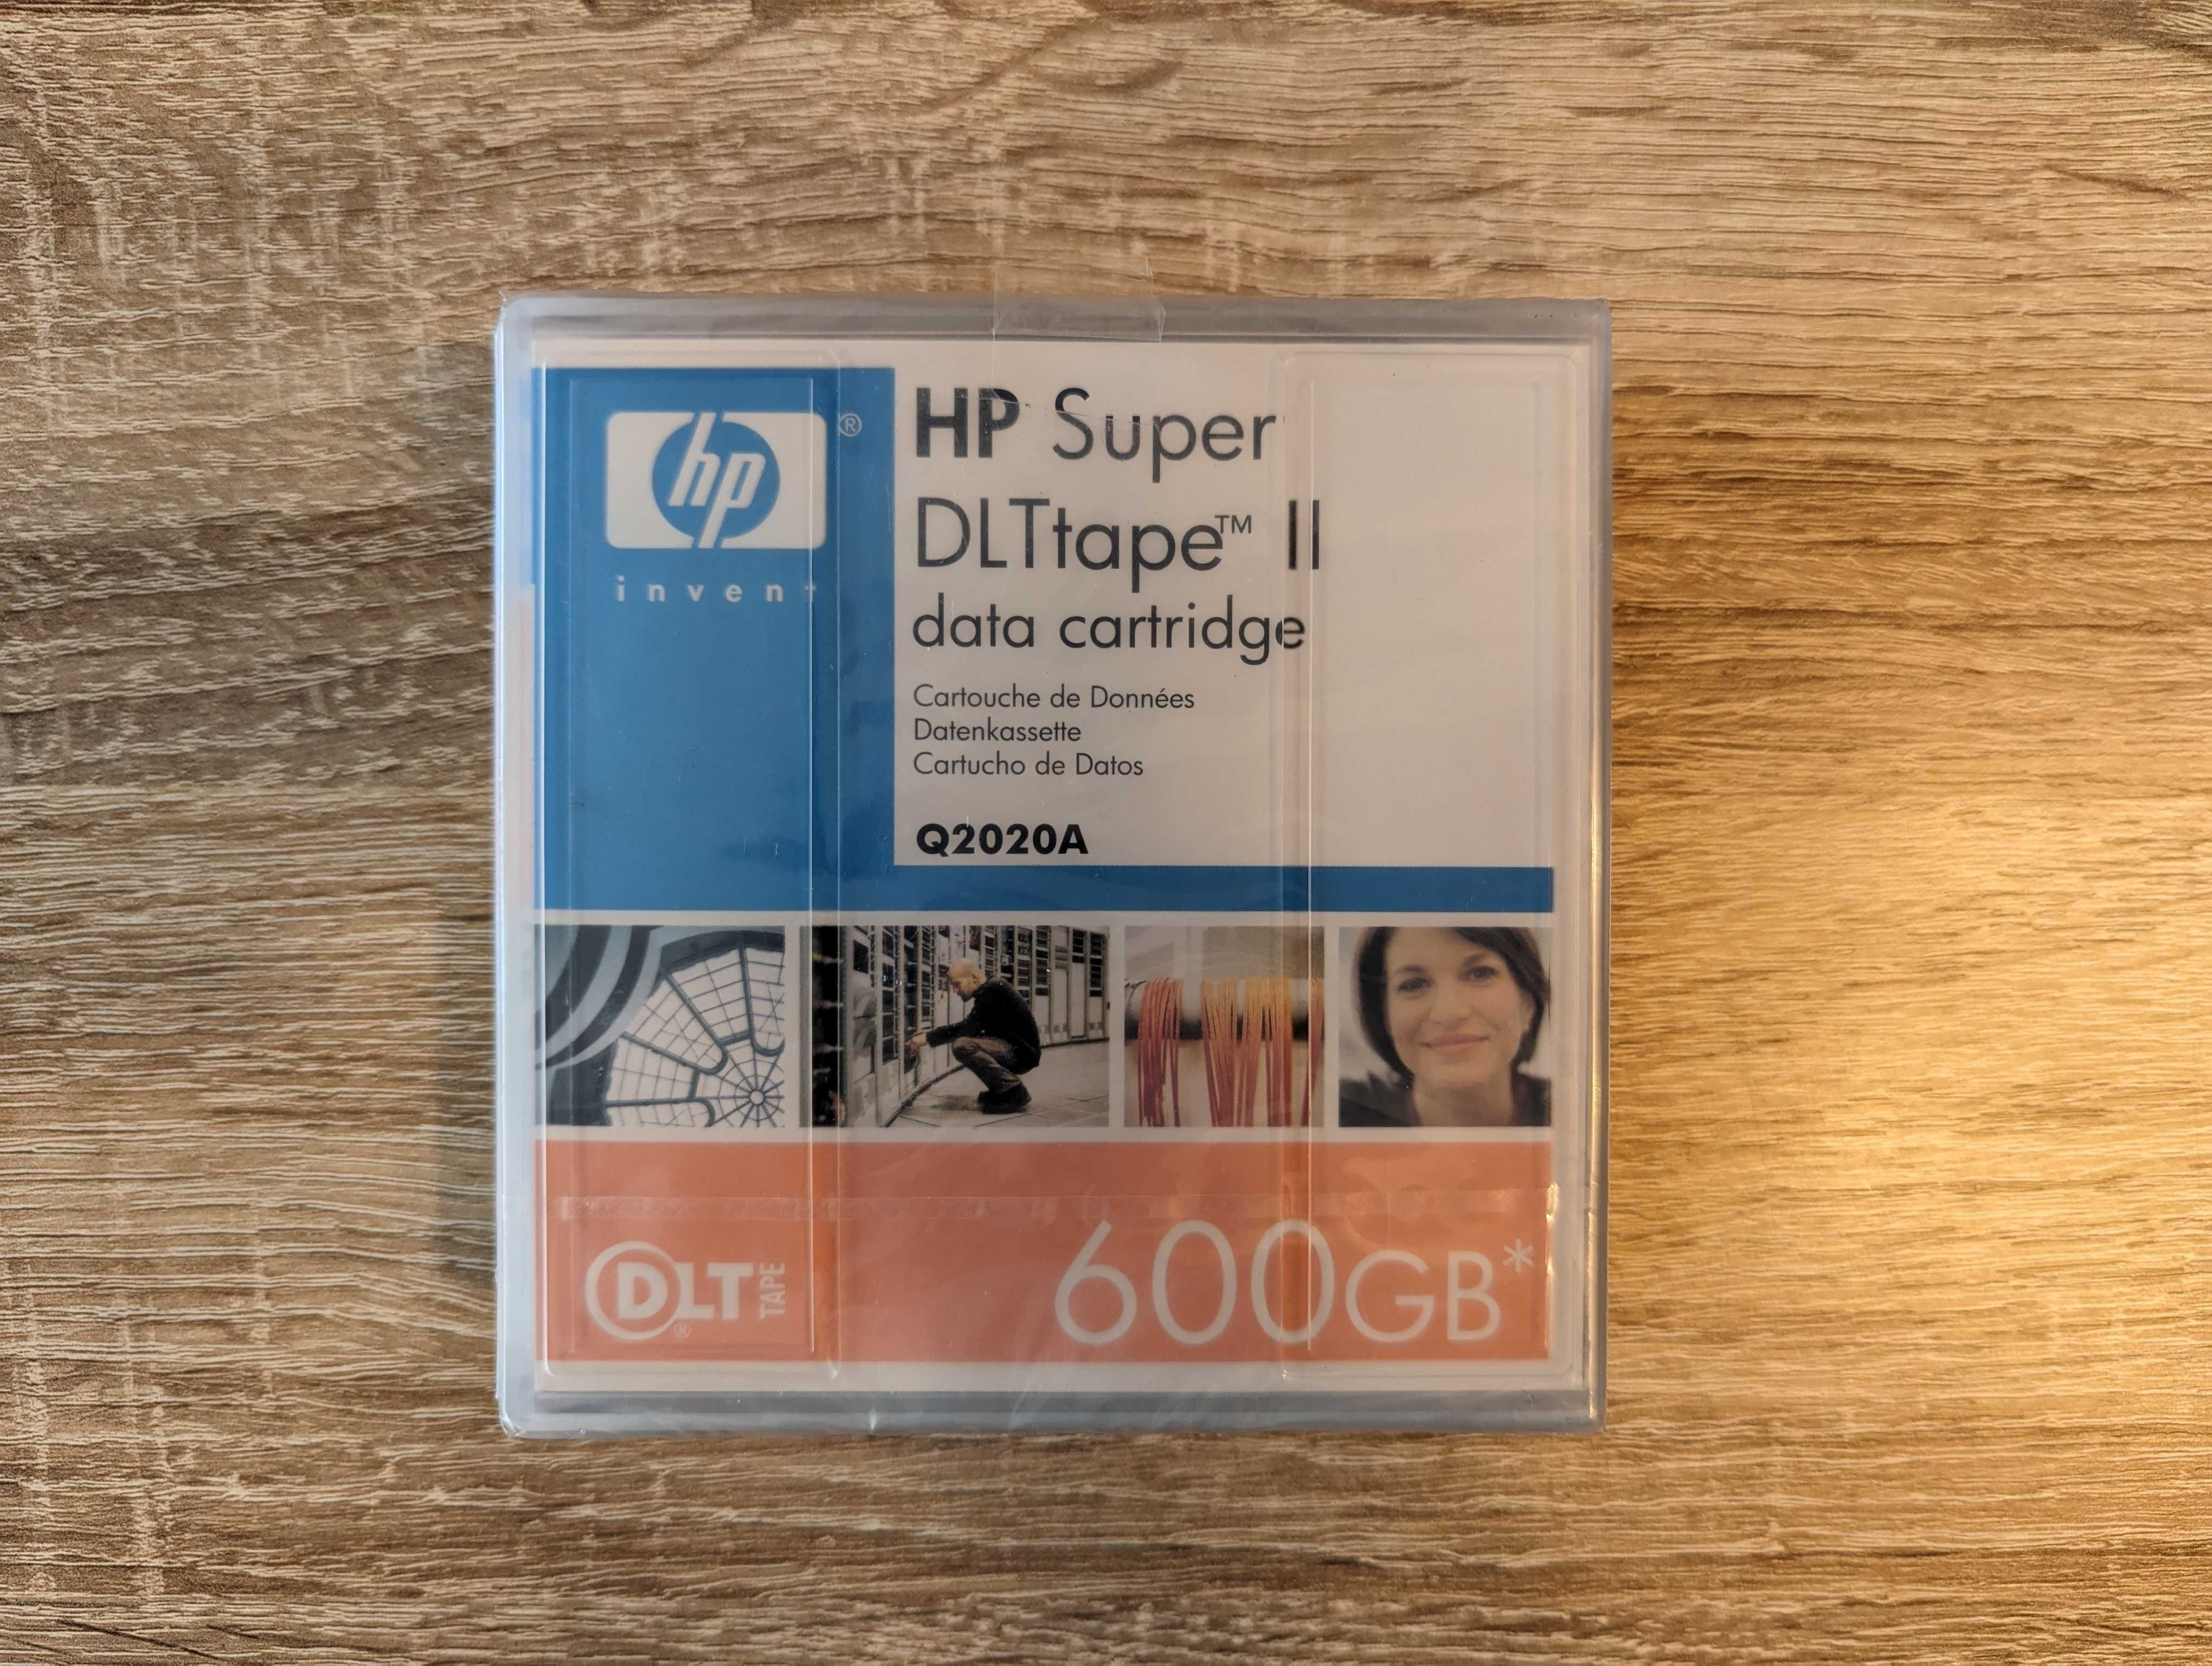 Taśmy magnetyczne HP Super DLTtape II data cart. 600 GB Q2020A 7 szt.